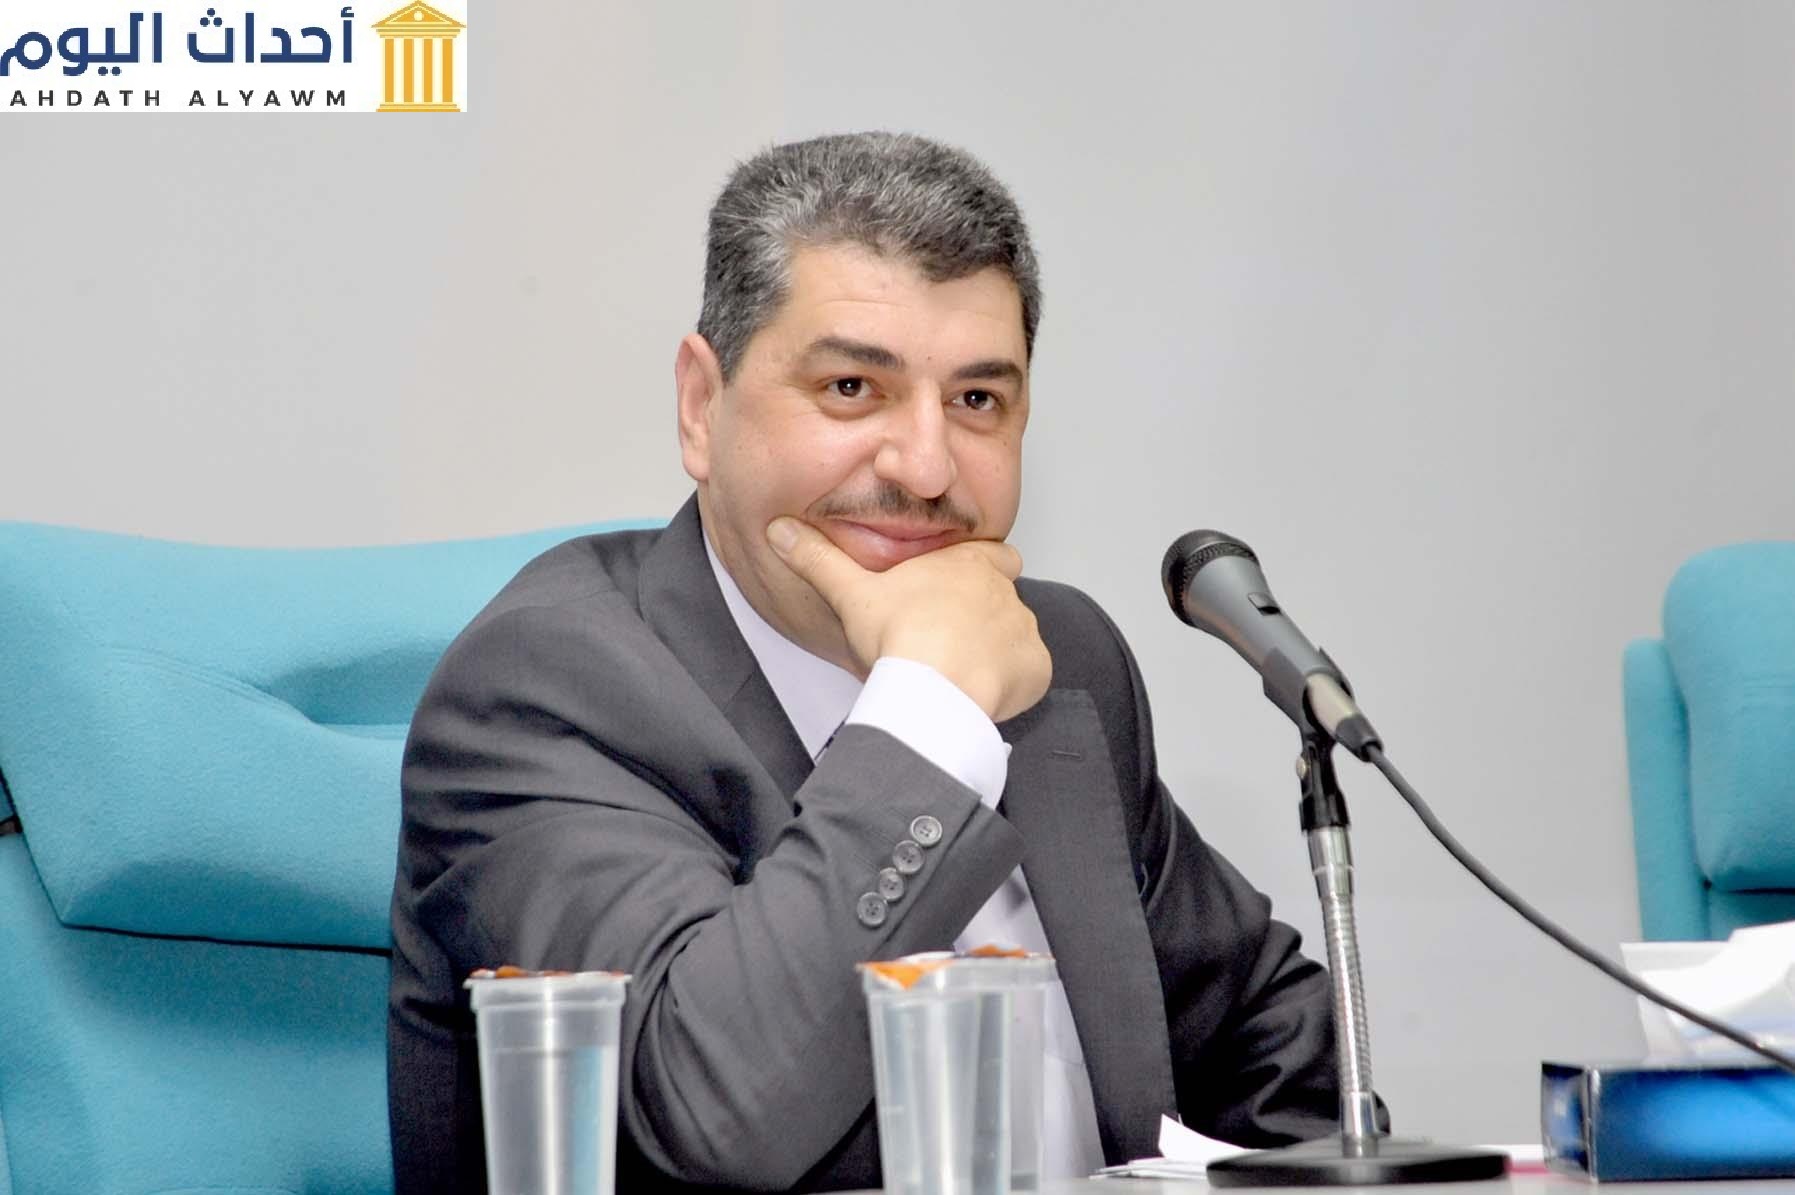 الكاتب الصحفي الأردني "أحمد الزعبي"